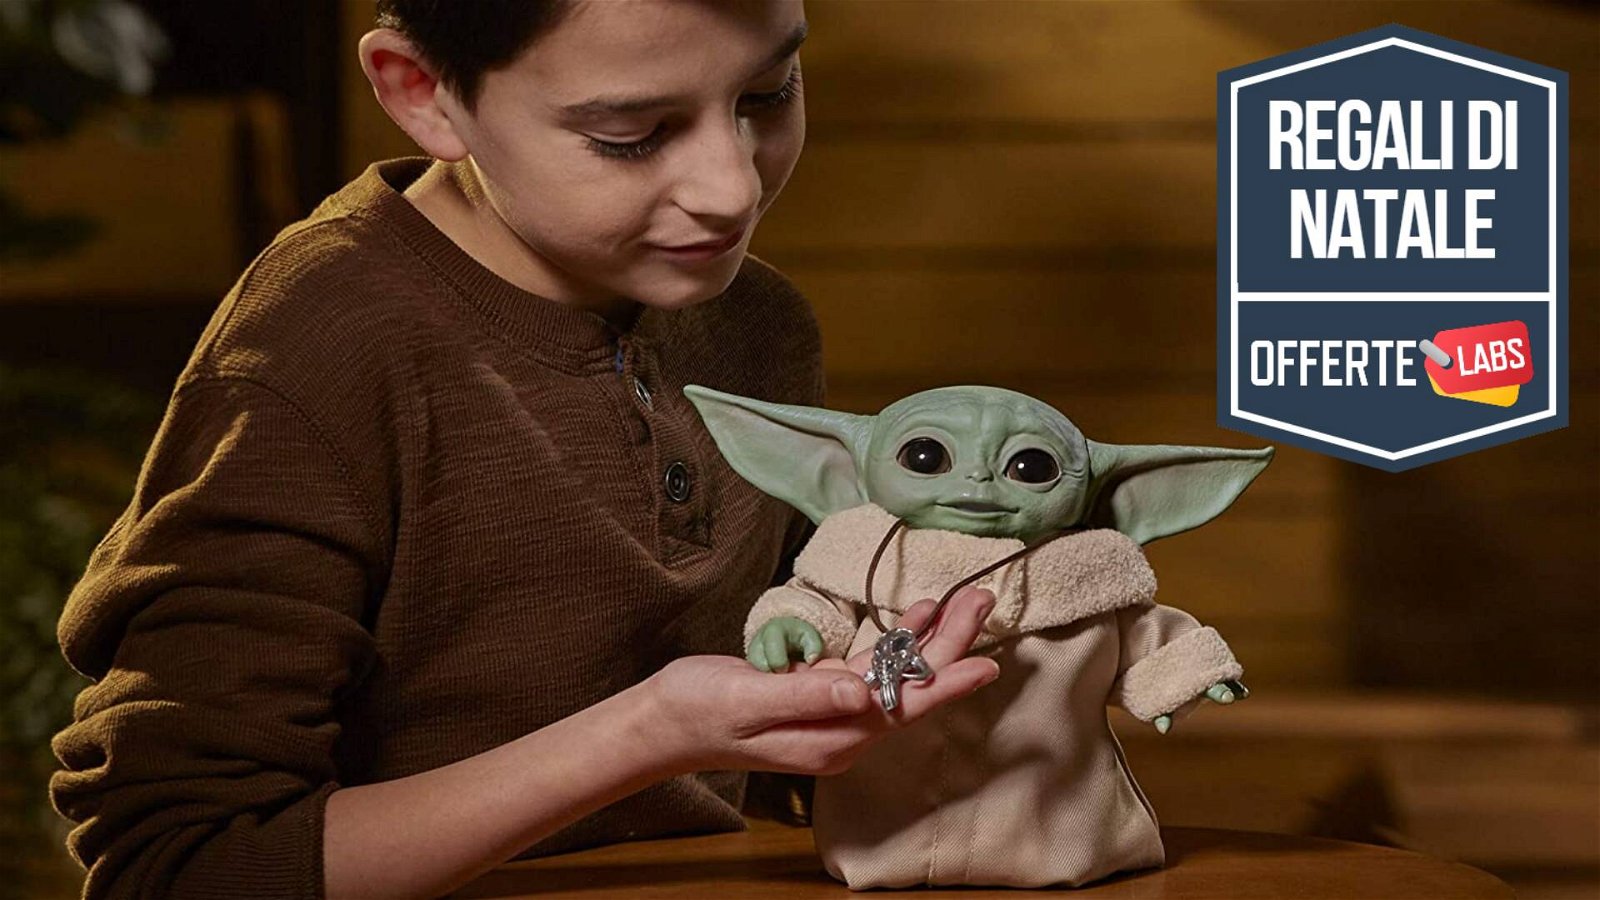 Immagine di Baby Yoda animato: il giocattolo più carino dell'universo, in sconto su Amazon!